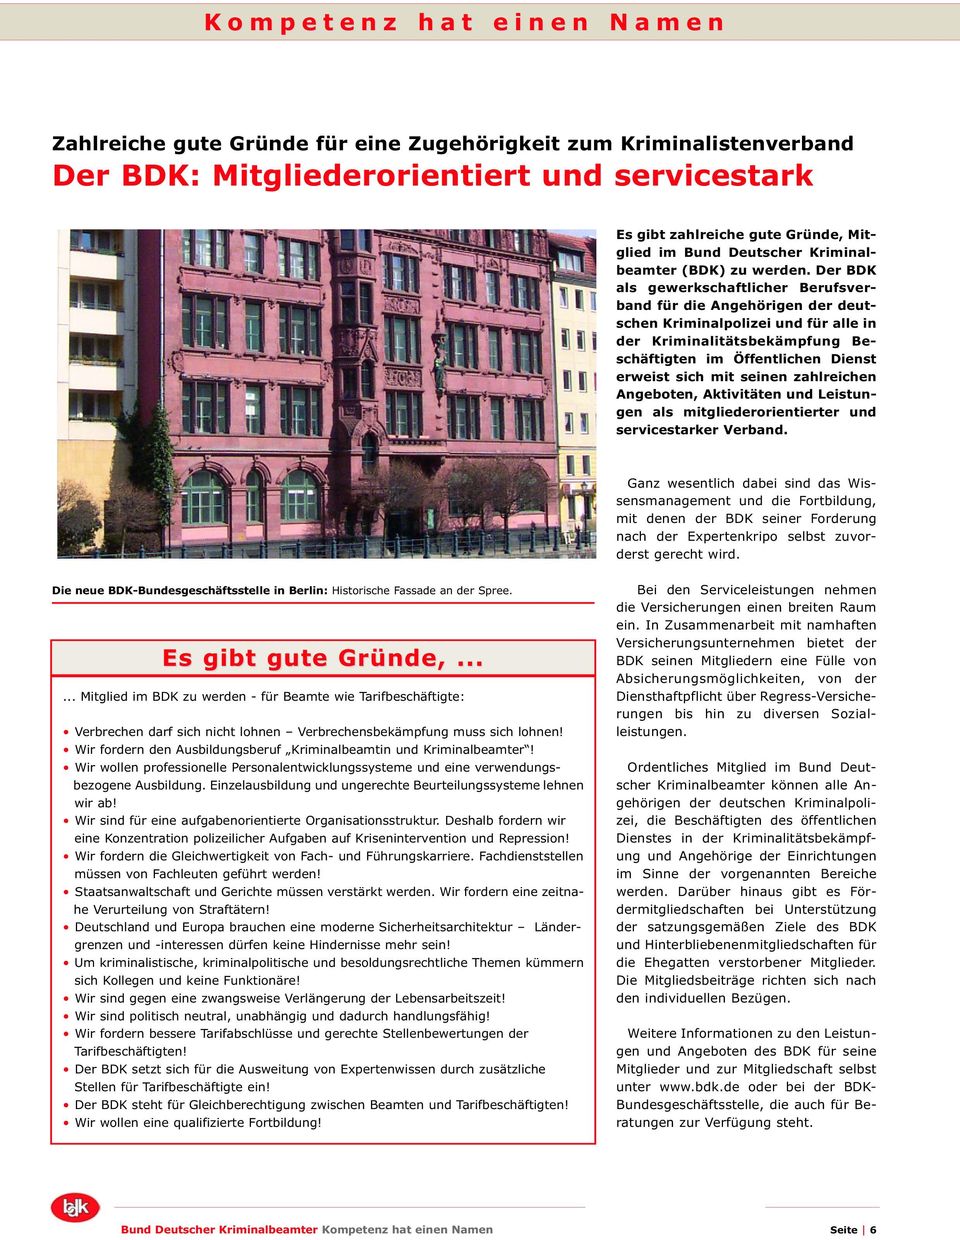 Der BDK als gewerkschaftlicher Berufsverband für die Angehörigen der deutschen Kriminalpolizei und für alle in der Kriminalitätsbekämpfung Beschäftigten im Öffentlichen Dienst erweist sich mit seinen